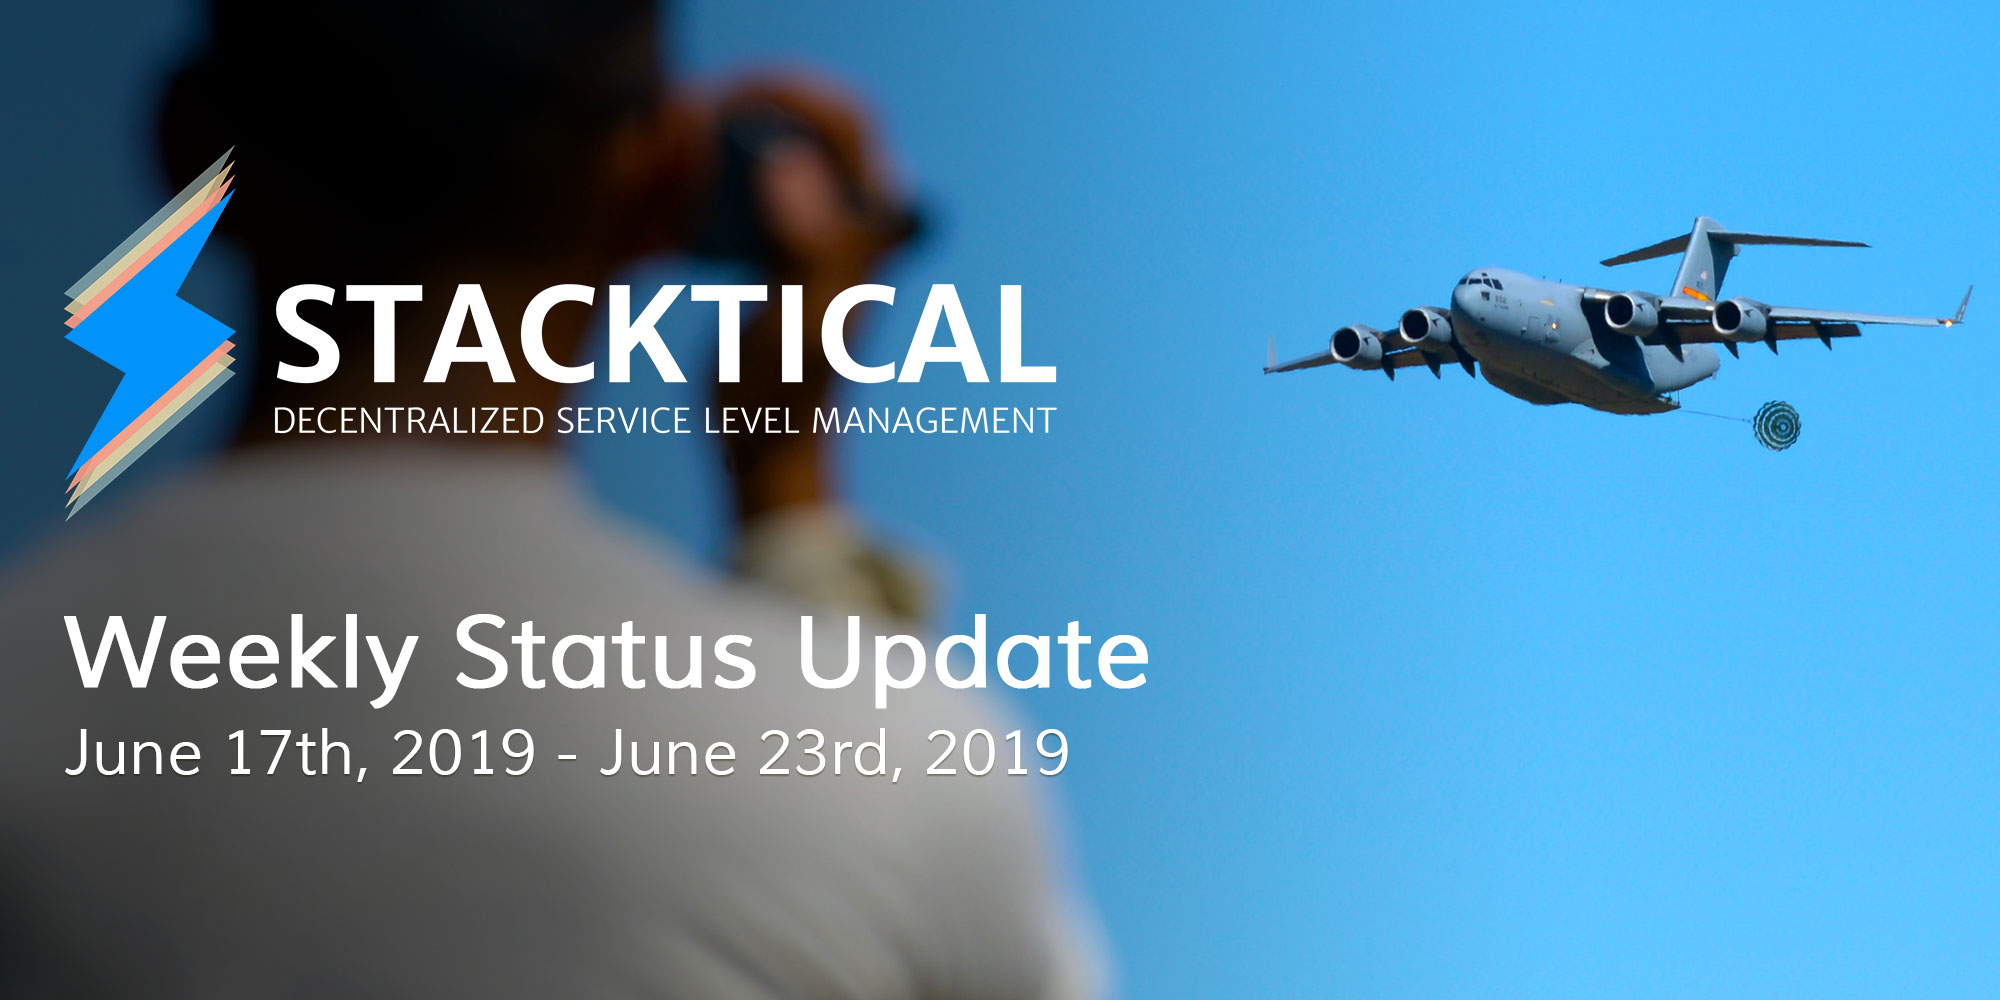 Weekly Status Update: June 17th, 2019 - June 23rd, 2019